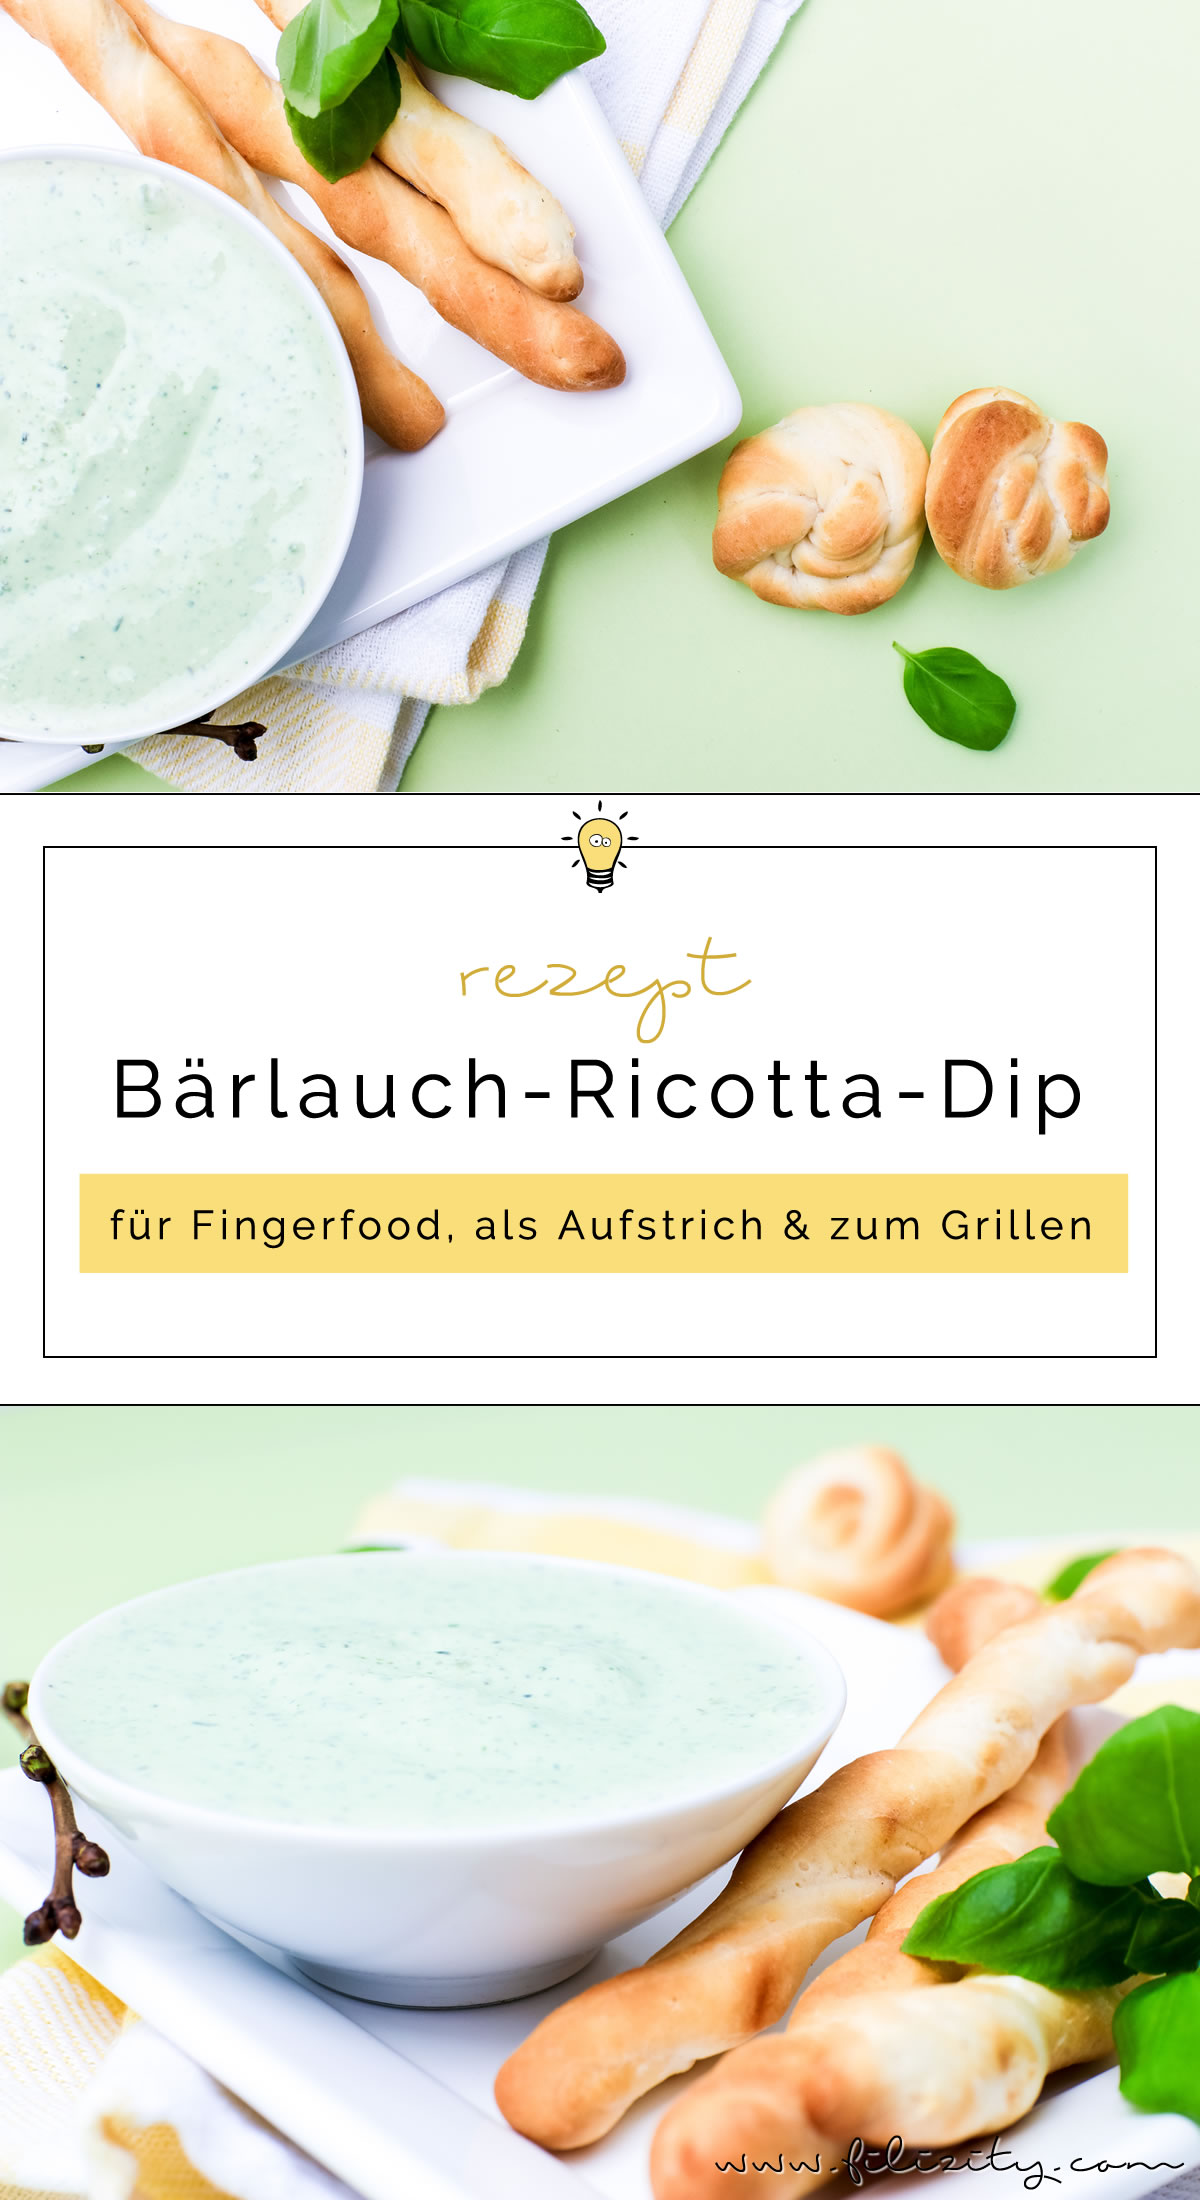 Ricotta Bärlauch Dip Rezept - Für Fingerfood, als Aufstrich oder zum Grillen | Auch perfekt für den Oster-Brunch! | Filizity.com | Food-Blog aus dem Rheinland #bärlauch #frühling #ostern